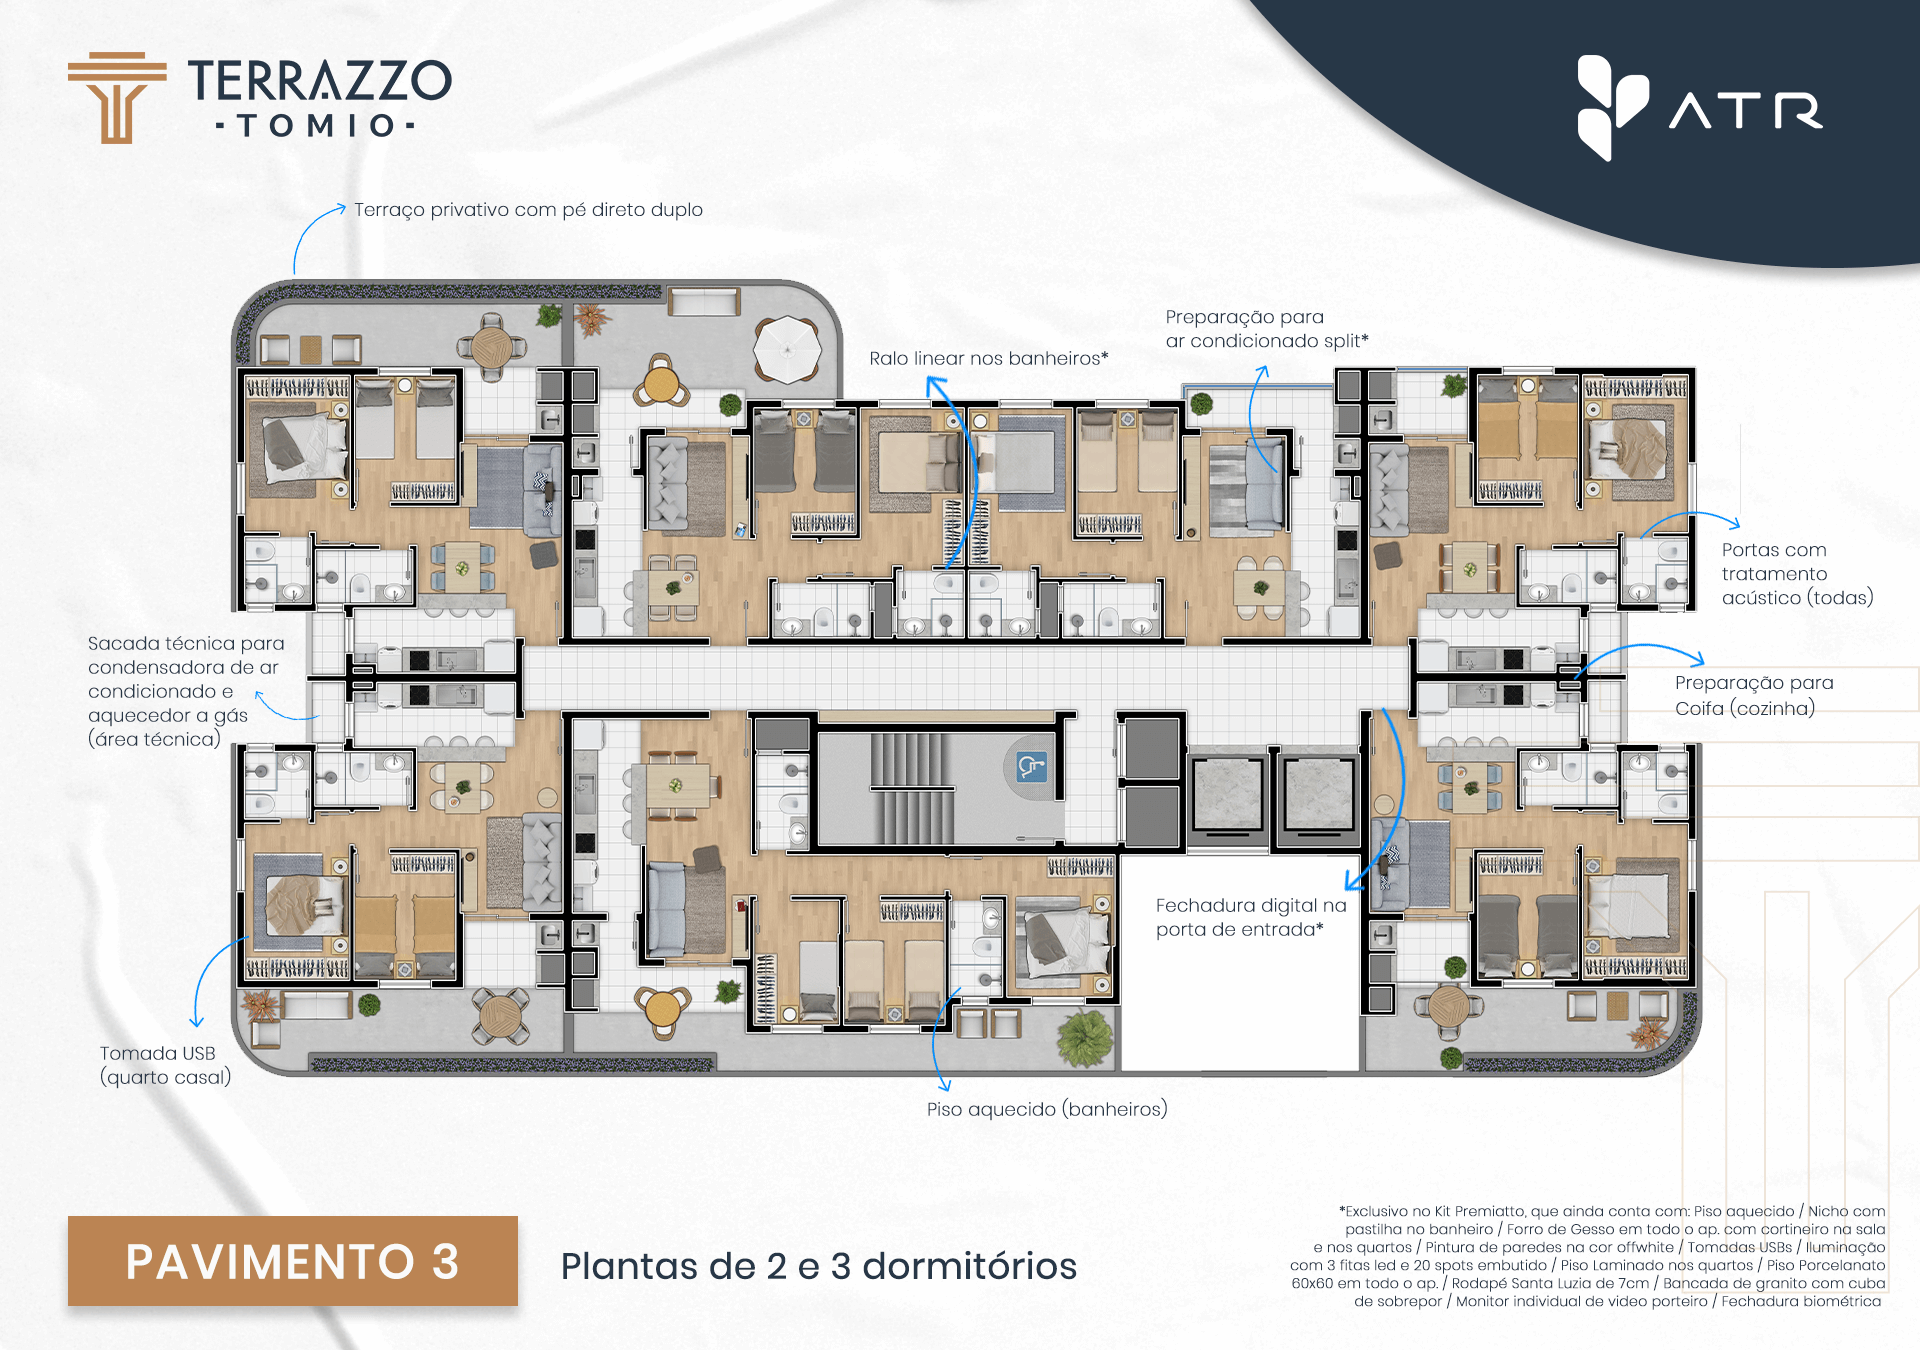 Apartamento à venda no Empreendimento Terrazzo Tomio em fase final de obra,  com entrega para 09/23 - São Pedro, São José dos Pinhais, PR - Capriatti